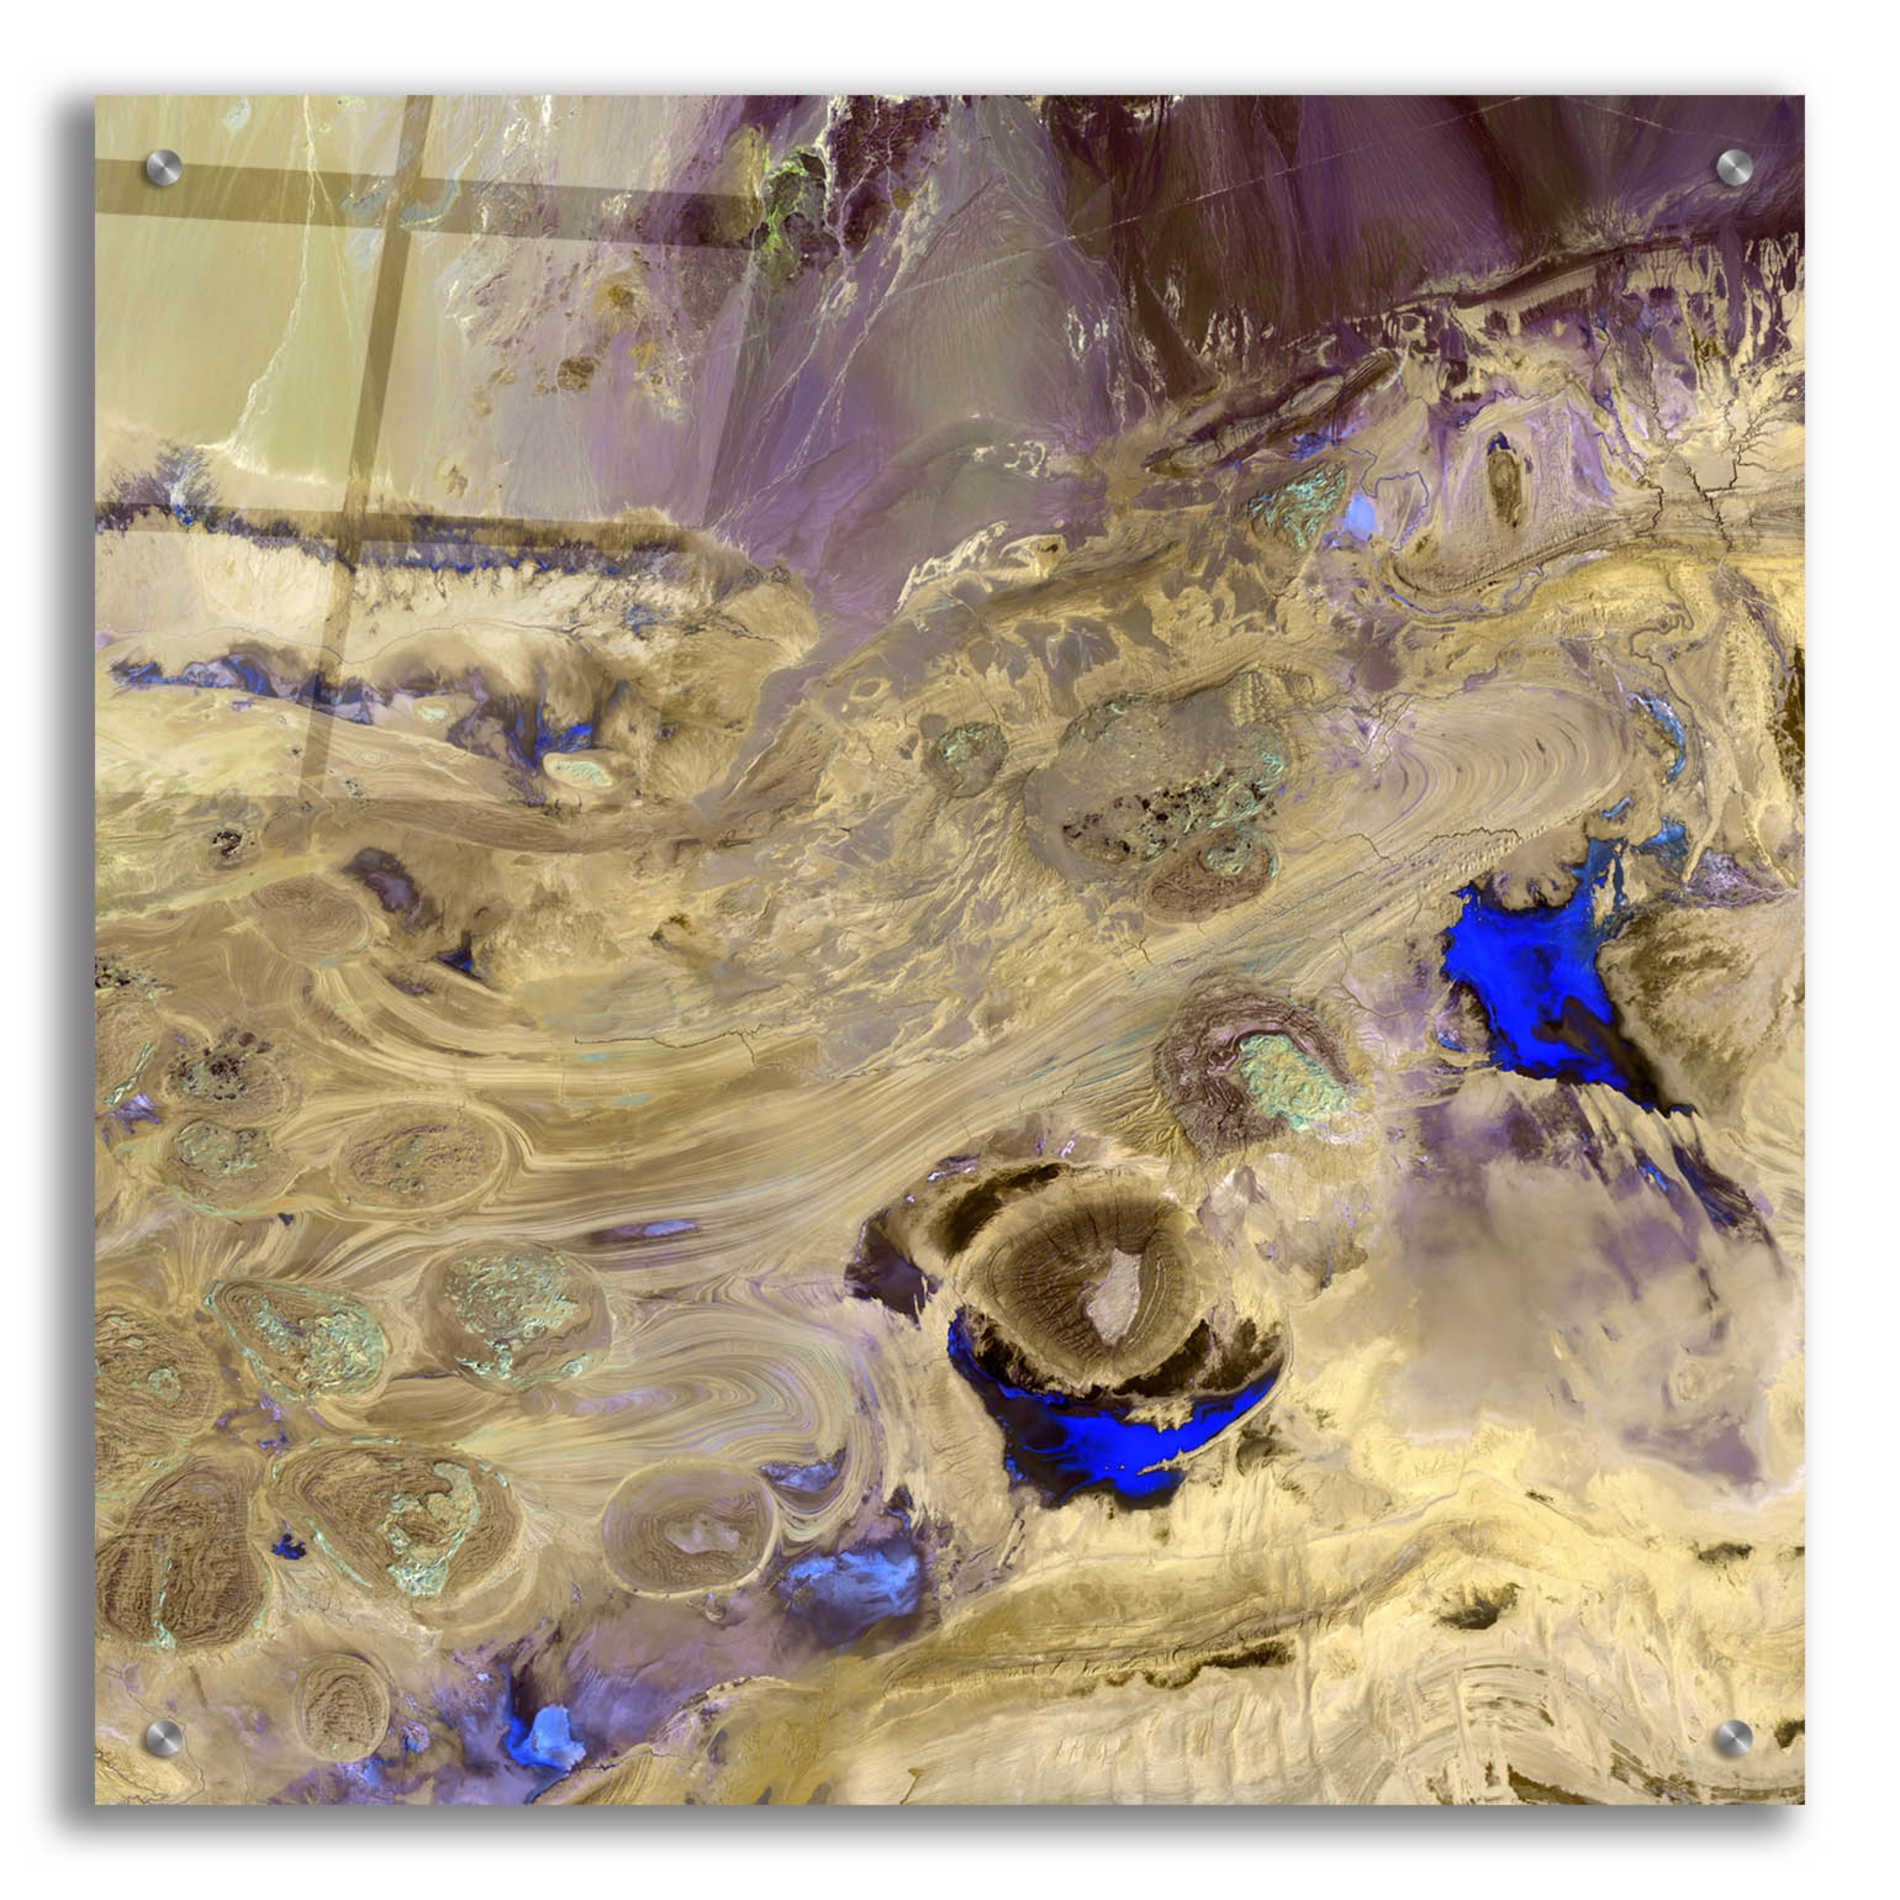 Epic Art 'Earth as Art: Great Salt Desert' Acrylic Glass Wall Art,24x24